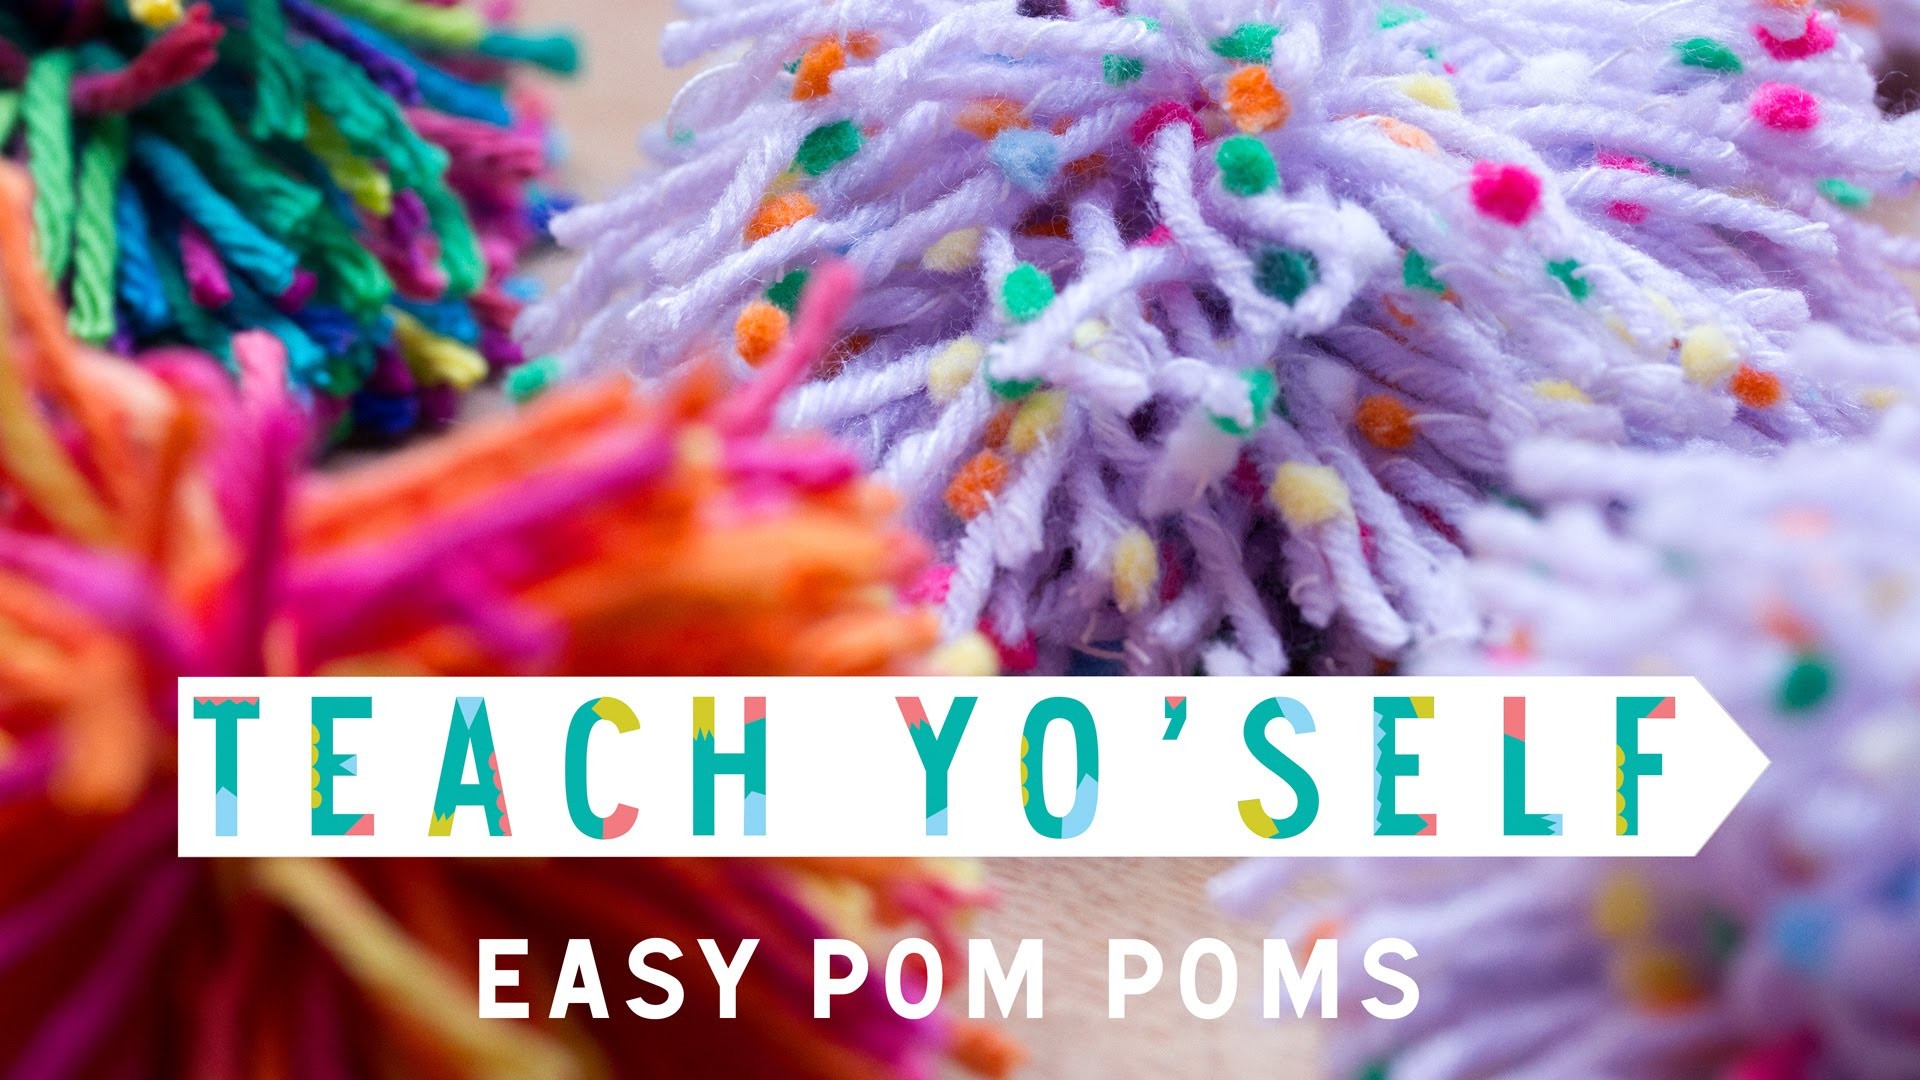 How to Make Easy Pom Poms